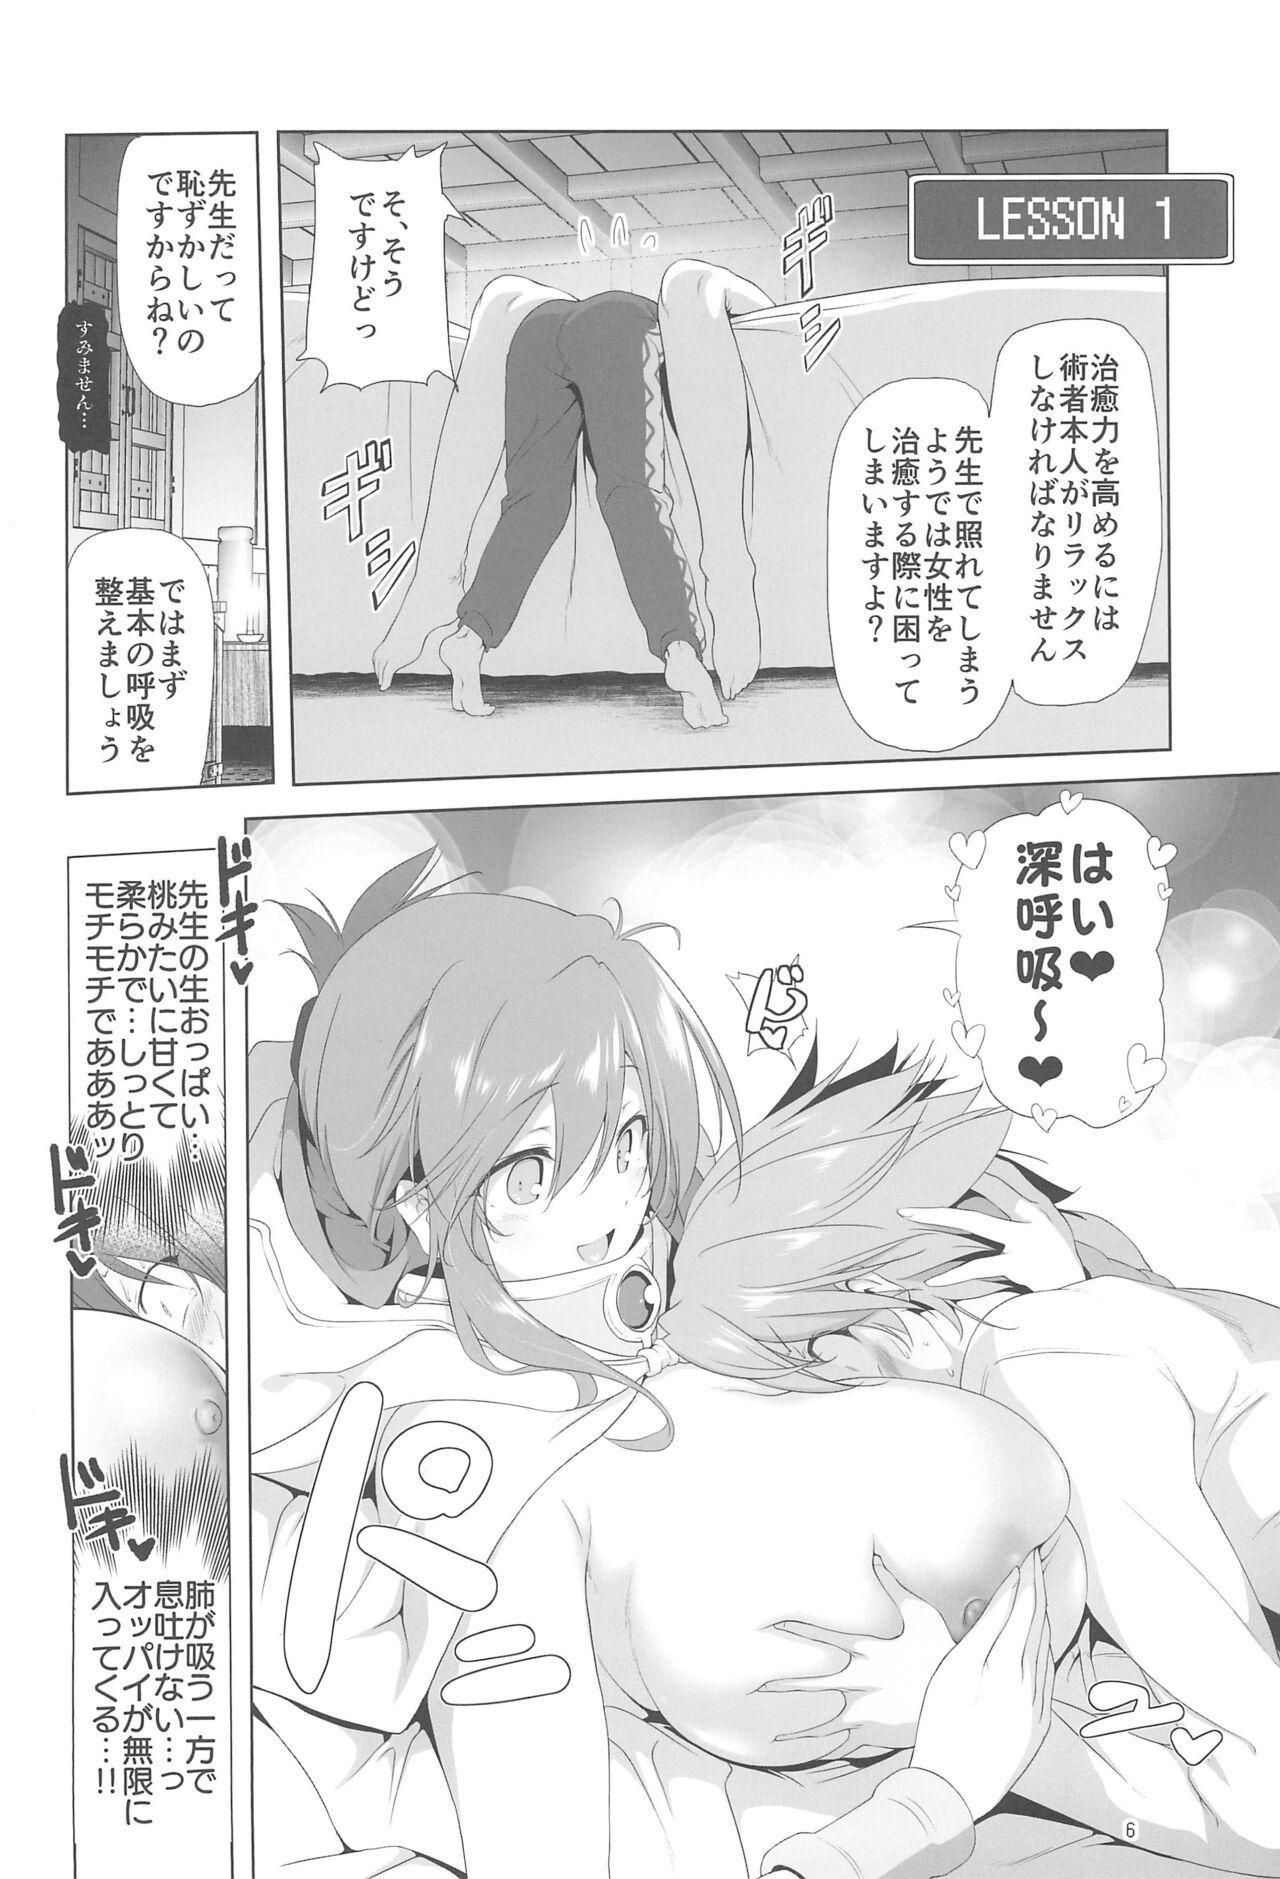 Long Hair Makotoni Zannen desu ga Bouken no Sho 9 wa Kiete Shimaimashita. - Original Bigbutt - Page 6